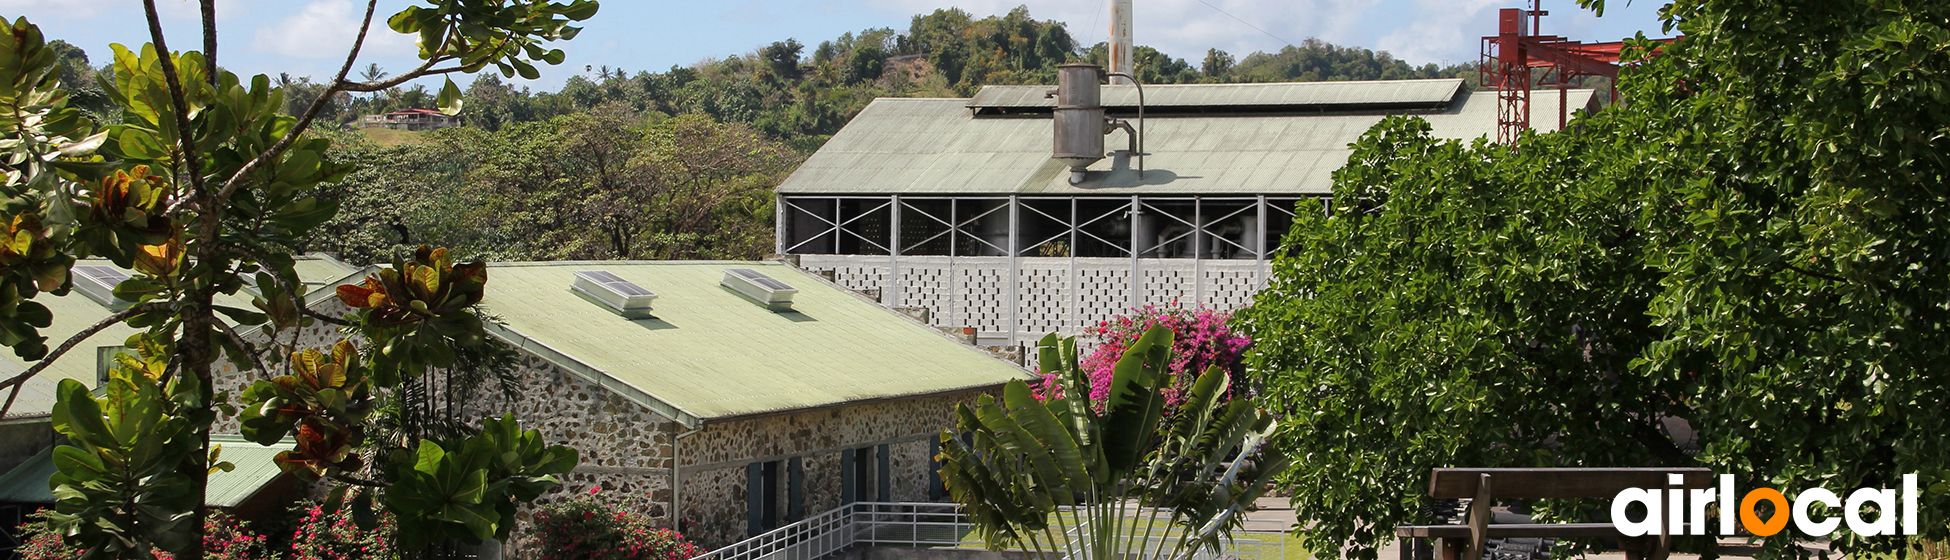 Loisir culturel martinique 97 Martinique